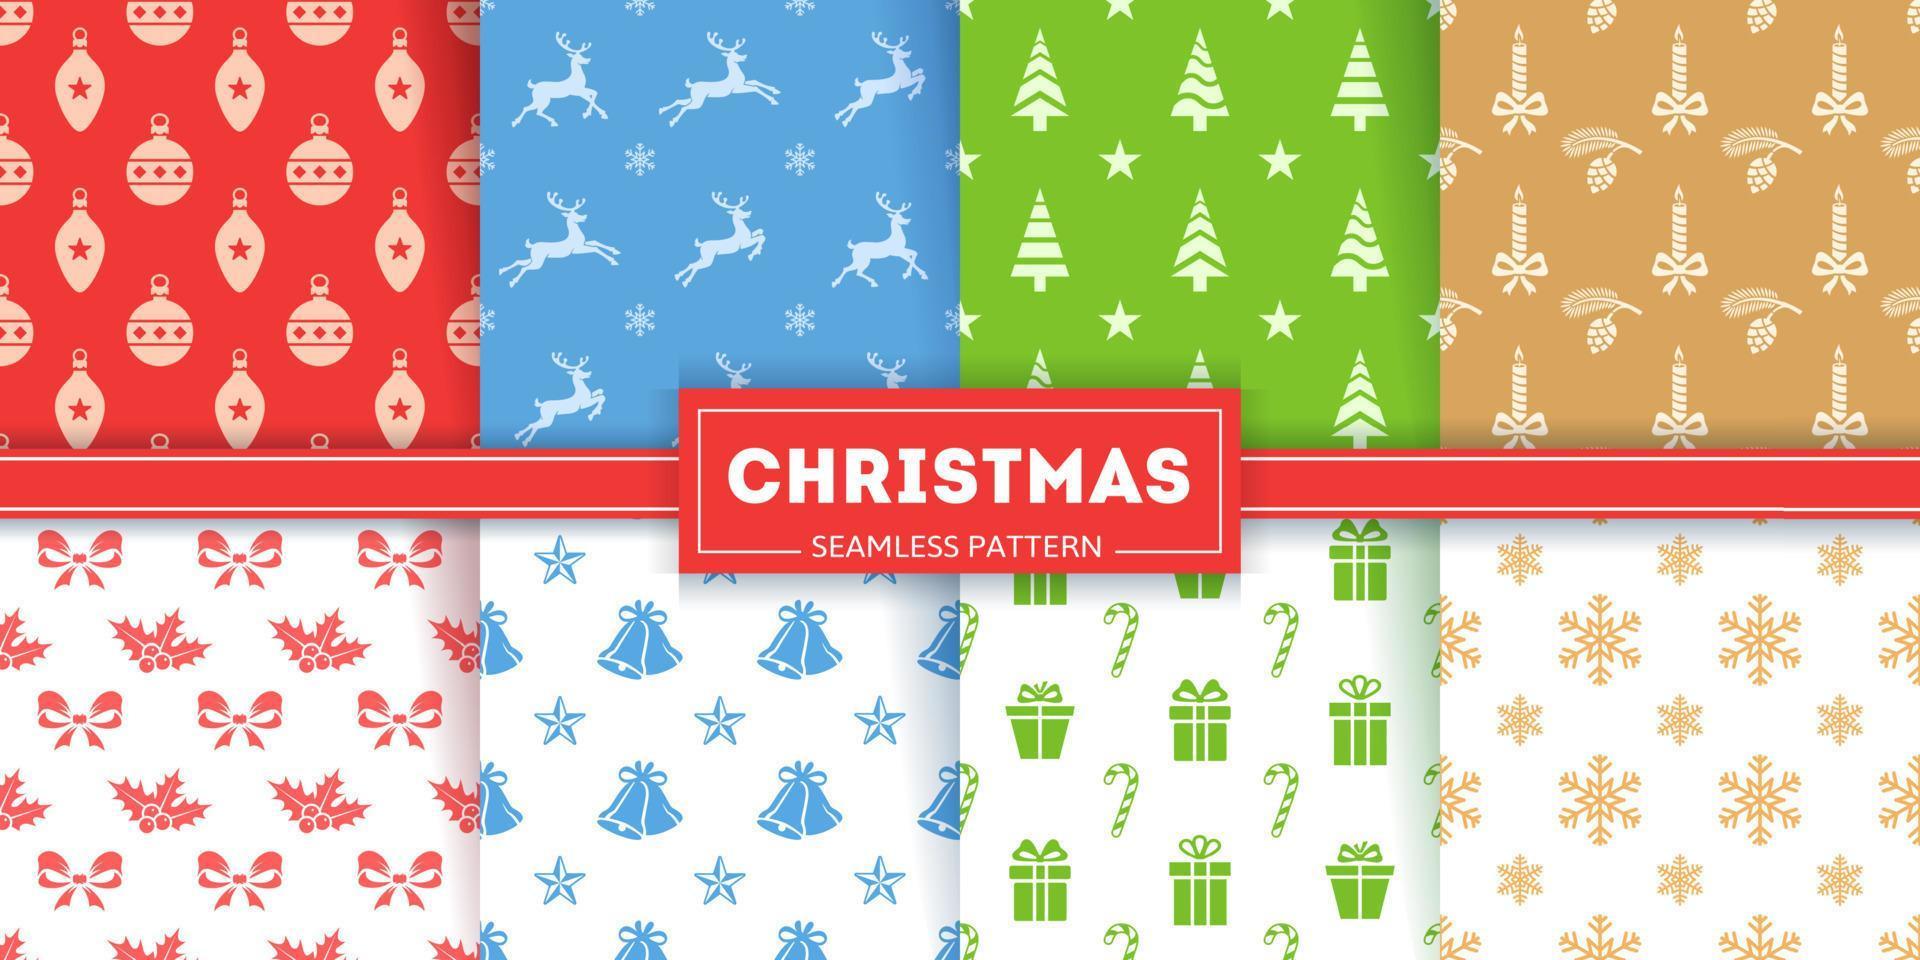 nahtlose mustersammlung für weihnachten. Symbole und Silhouetten von Weihnachtskugeln, Rentieren und Weihnachtsbäumen. farbenfrohe Illustrationen von Schleifen, Glocken und Geschenkboxen. weihnachtliche Texturen vektor